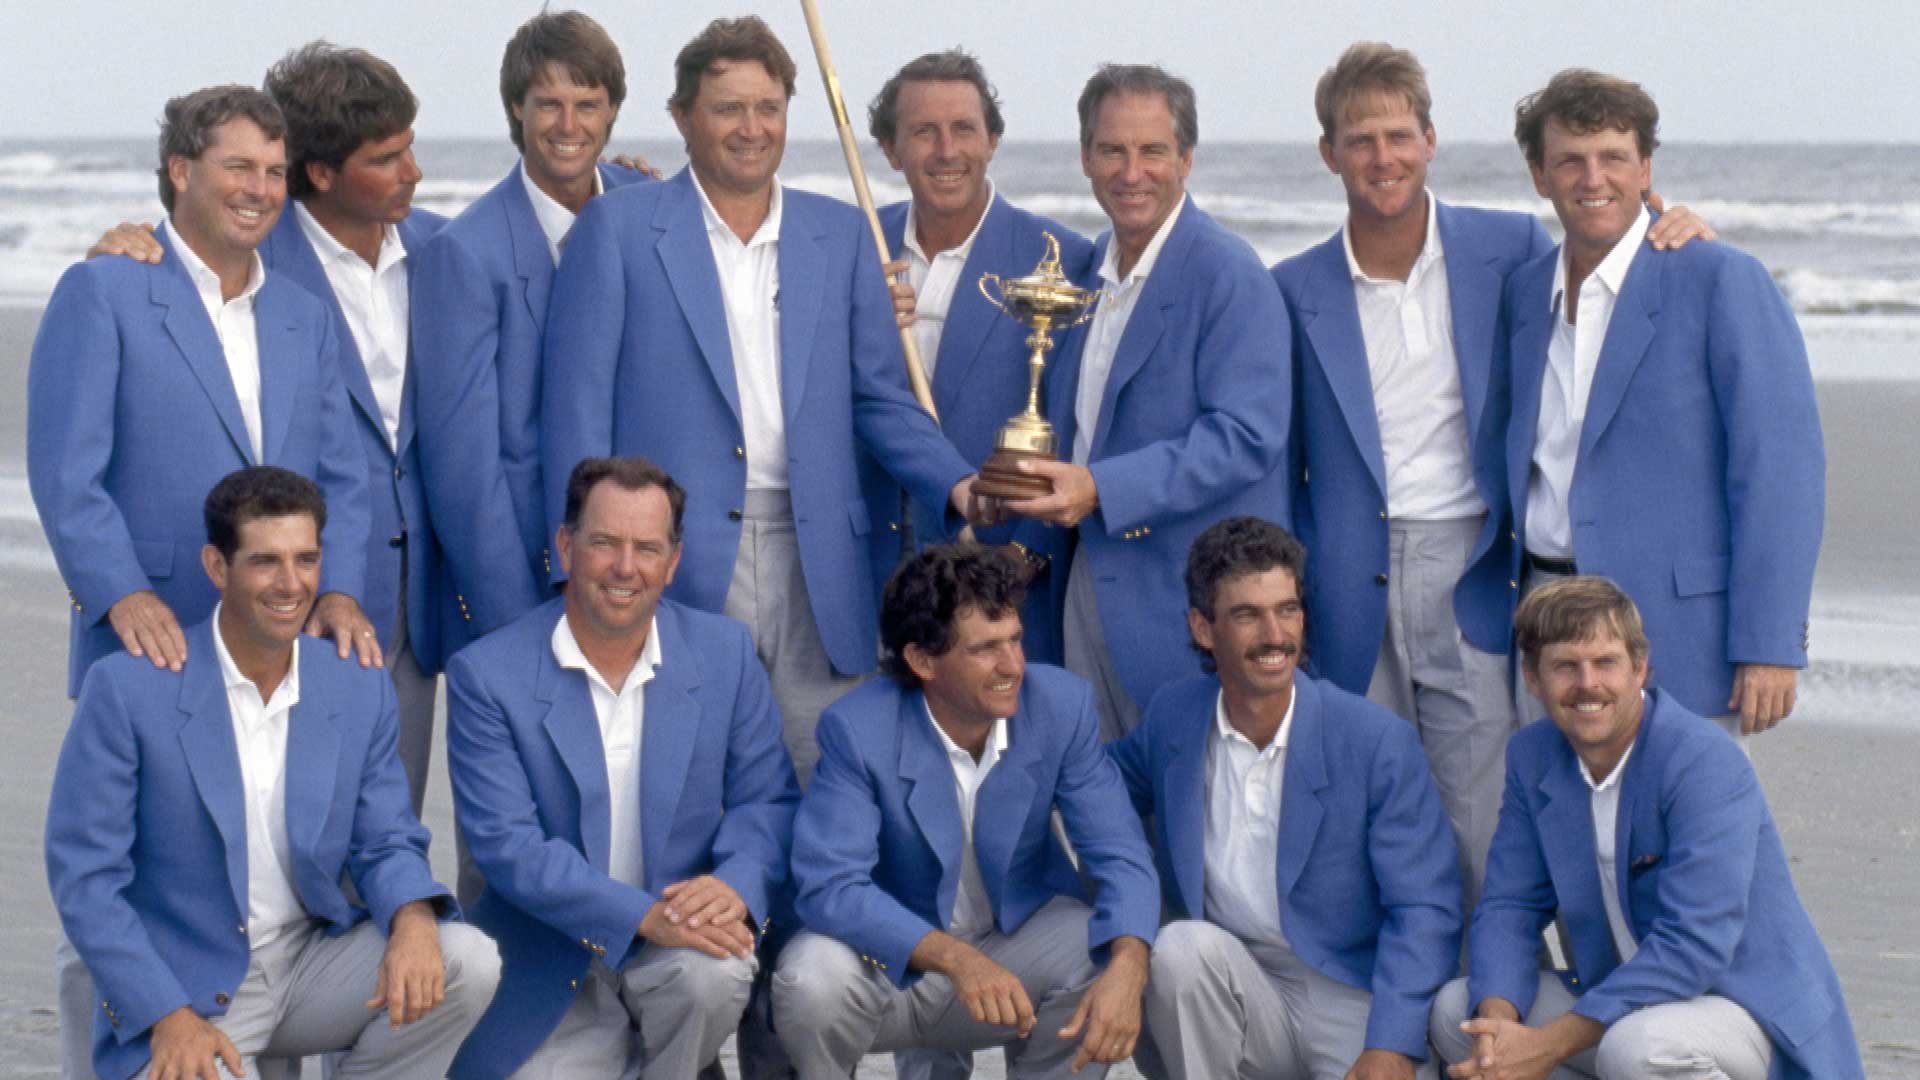 USA Ryder Cup Team 1991